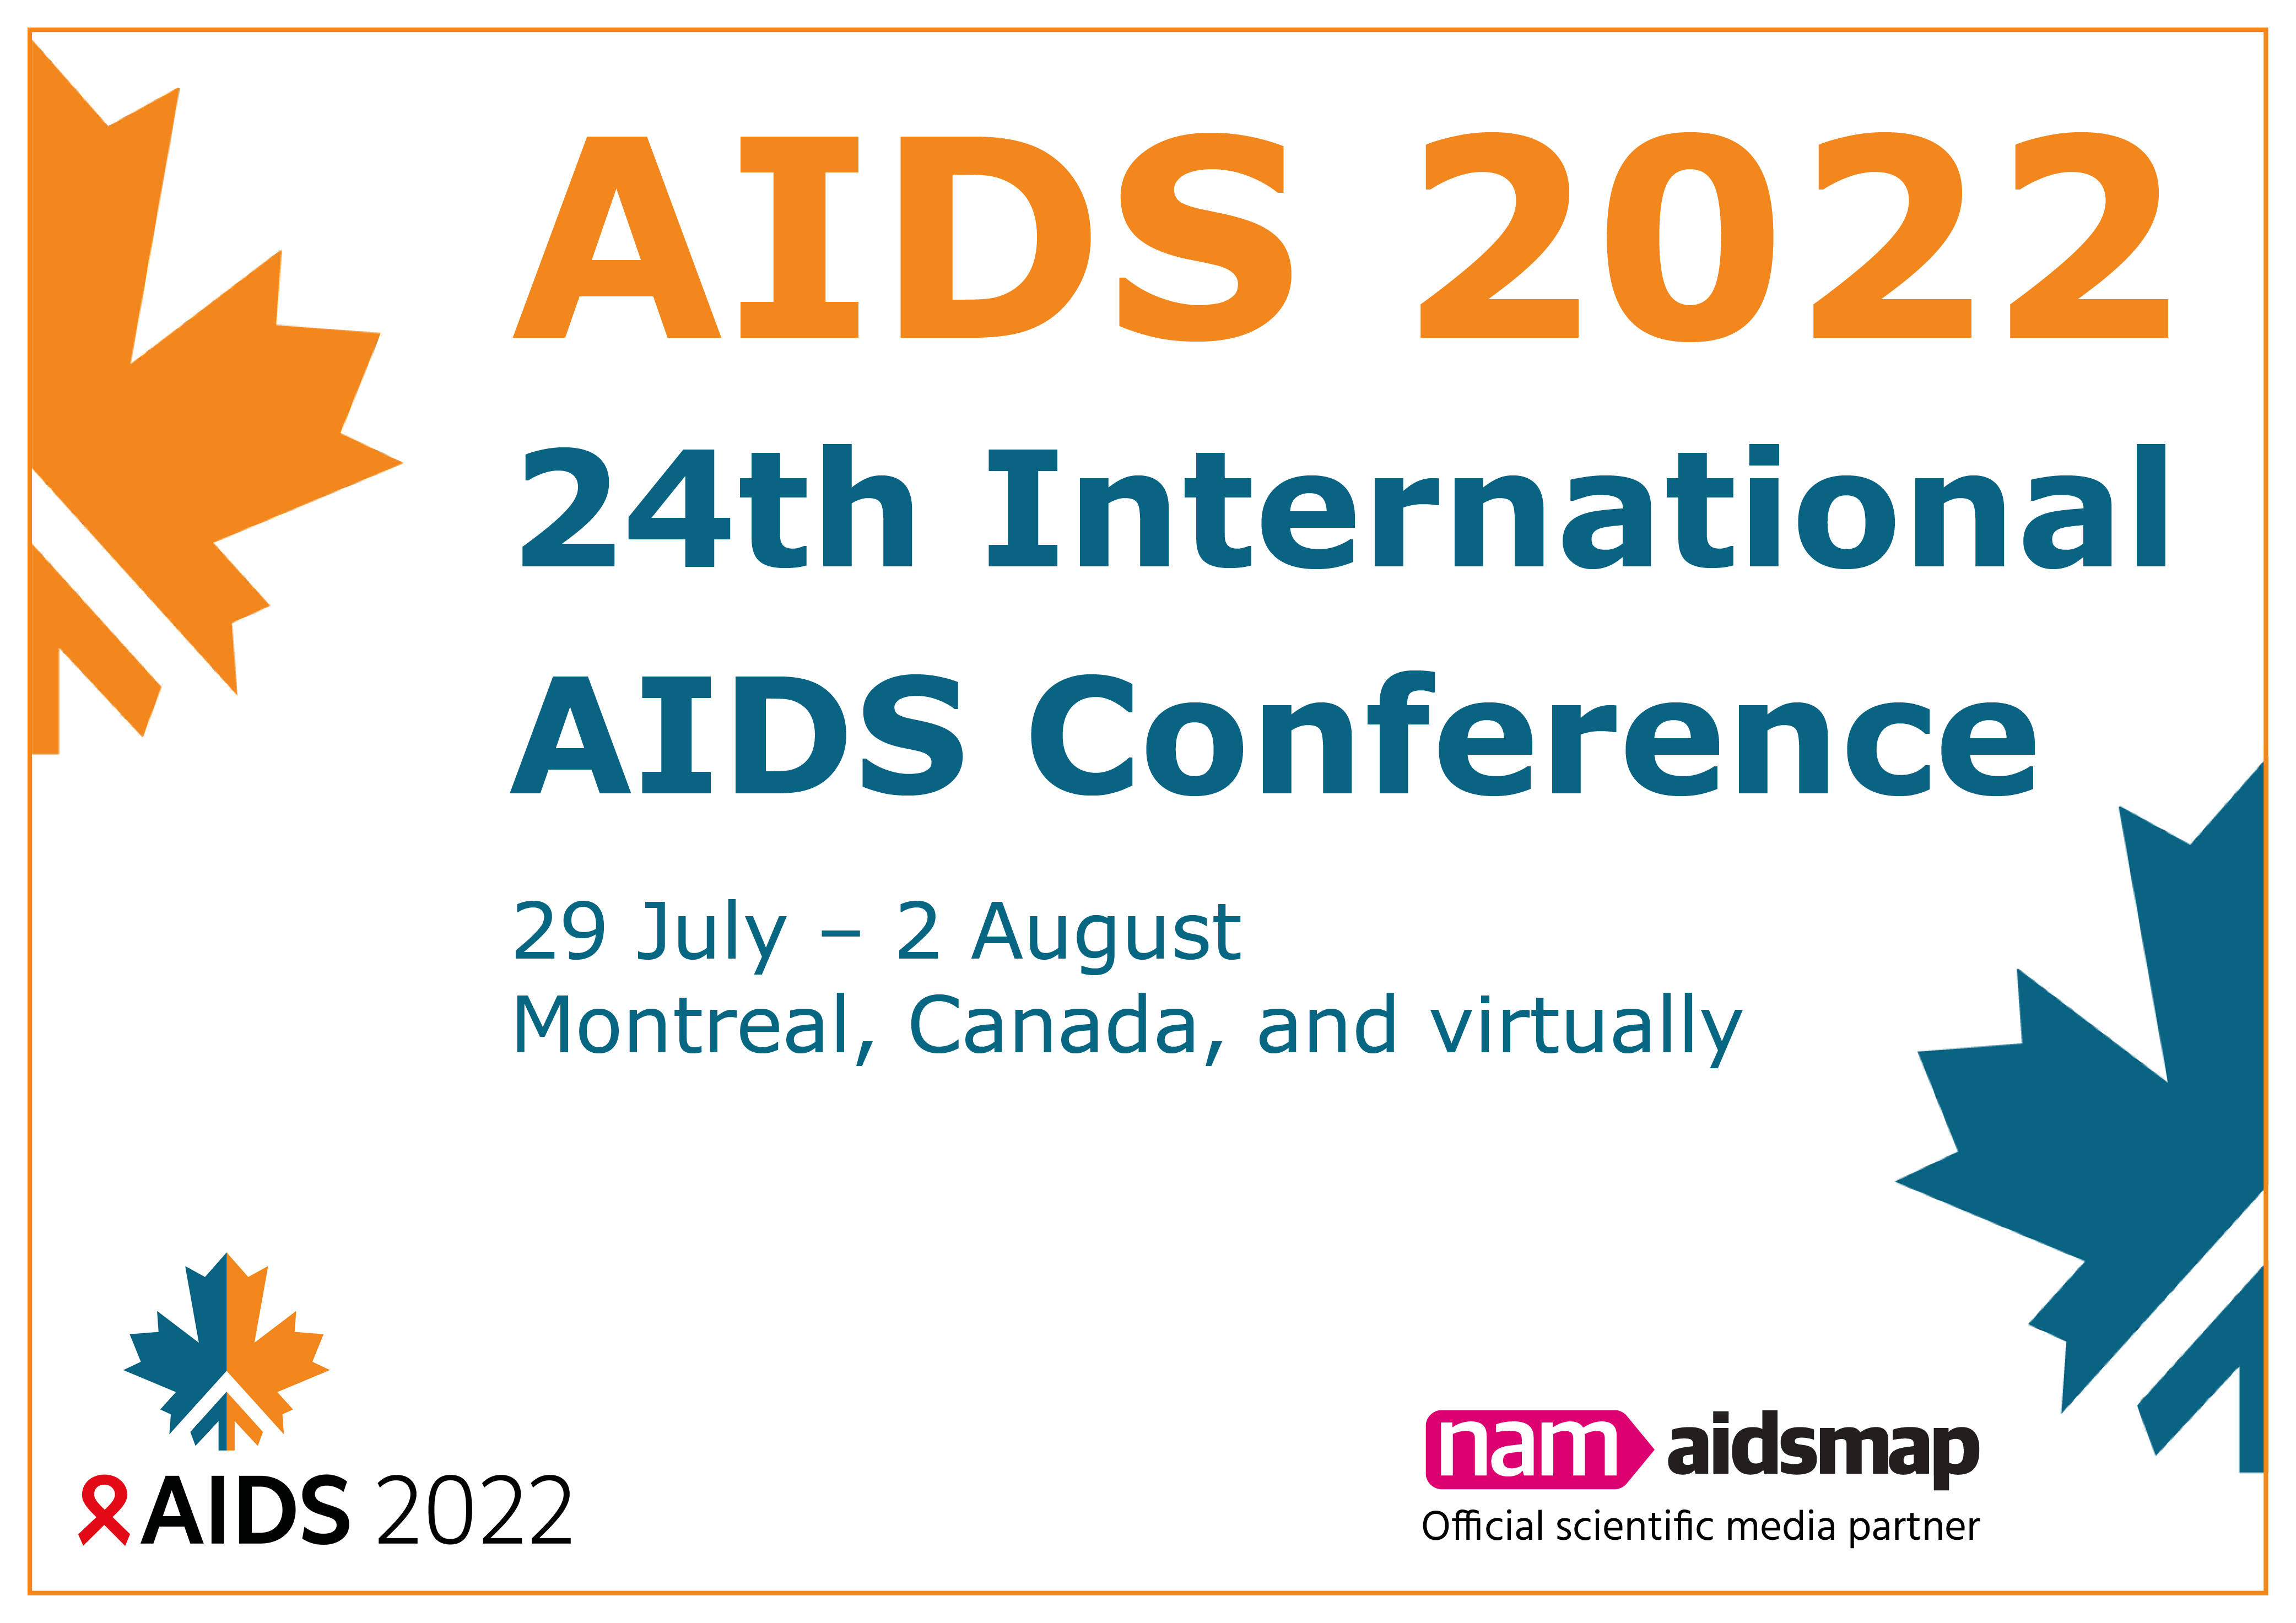 AIDS 2022 aidsmap